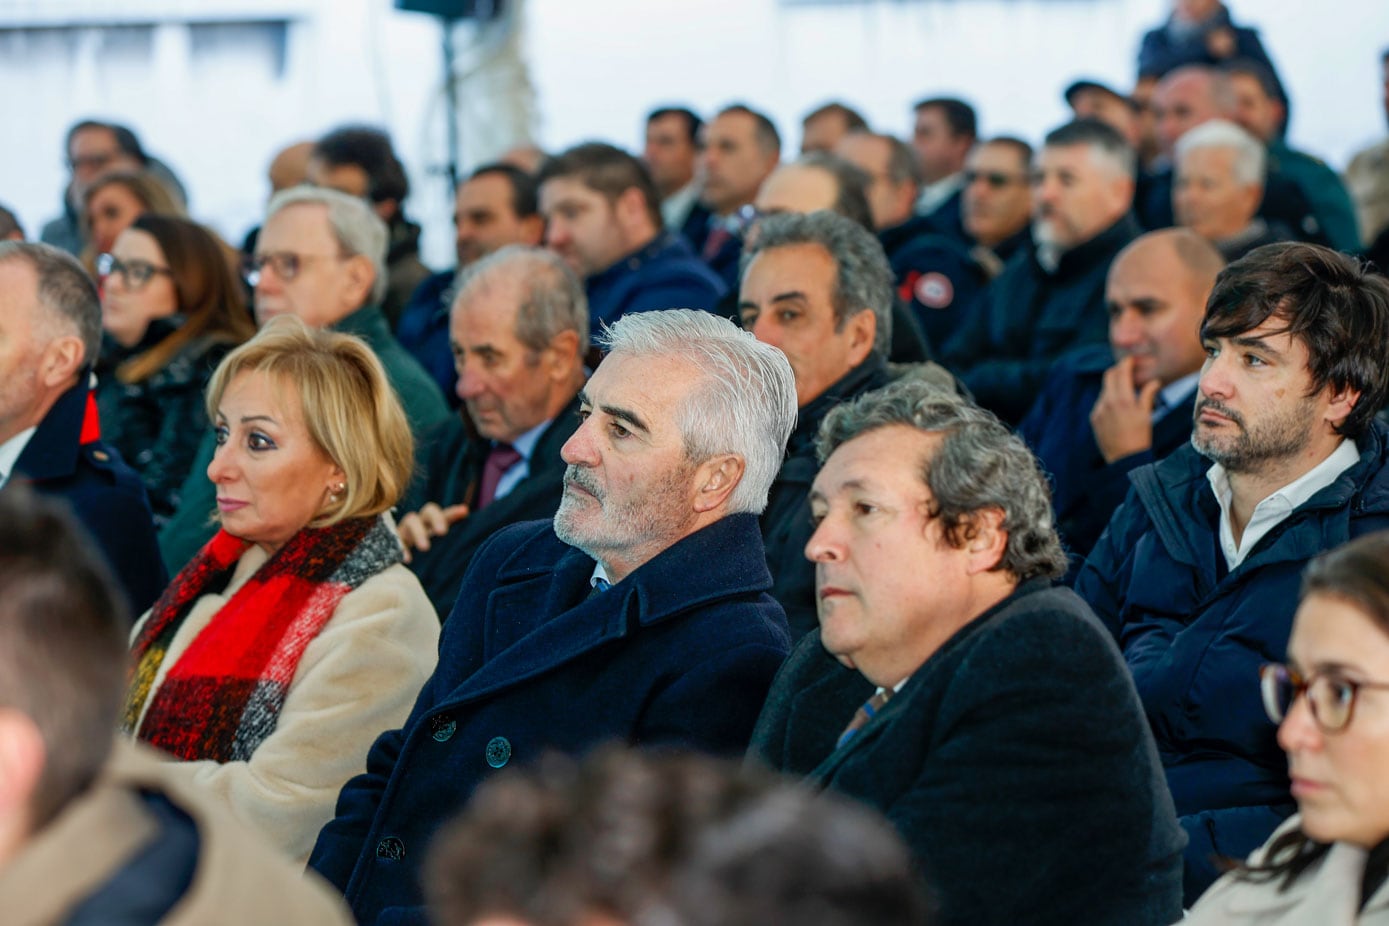 Cerca de 200 personas estuvieron en el acto, entre los que se puede ver al expresidente de Cantabria, José Joaquín Marínez Sieso, el ex consejero y ex presidente del Puerto de Santander, Francisco Martín o el senador autonómico, Íñigo Fernández.